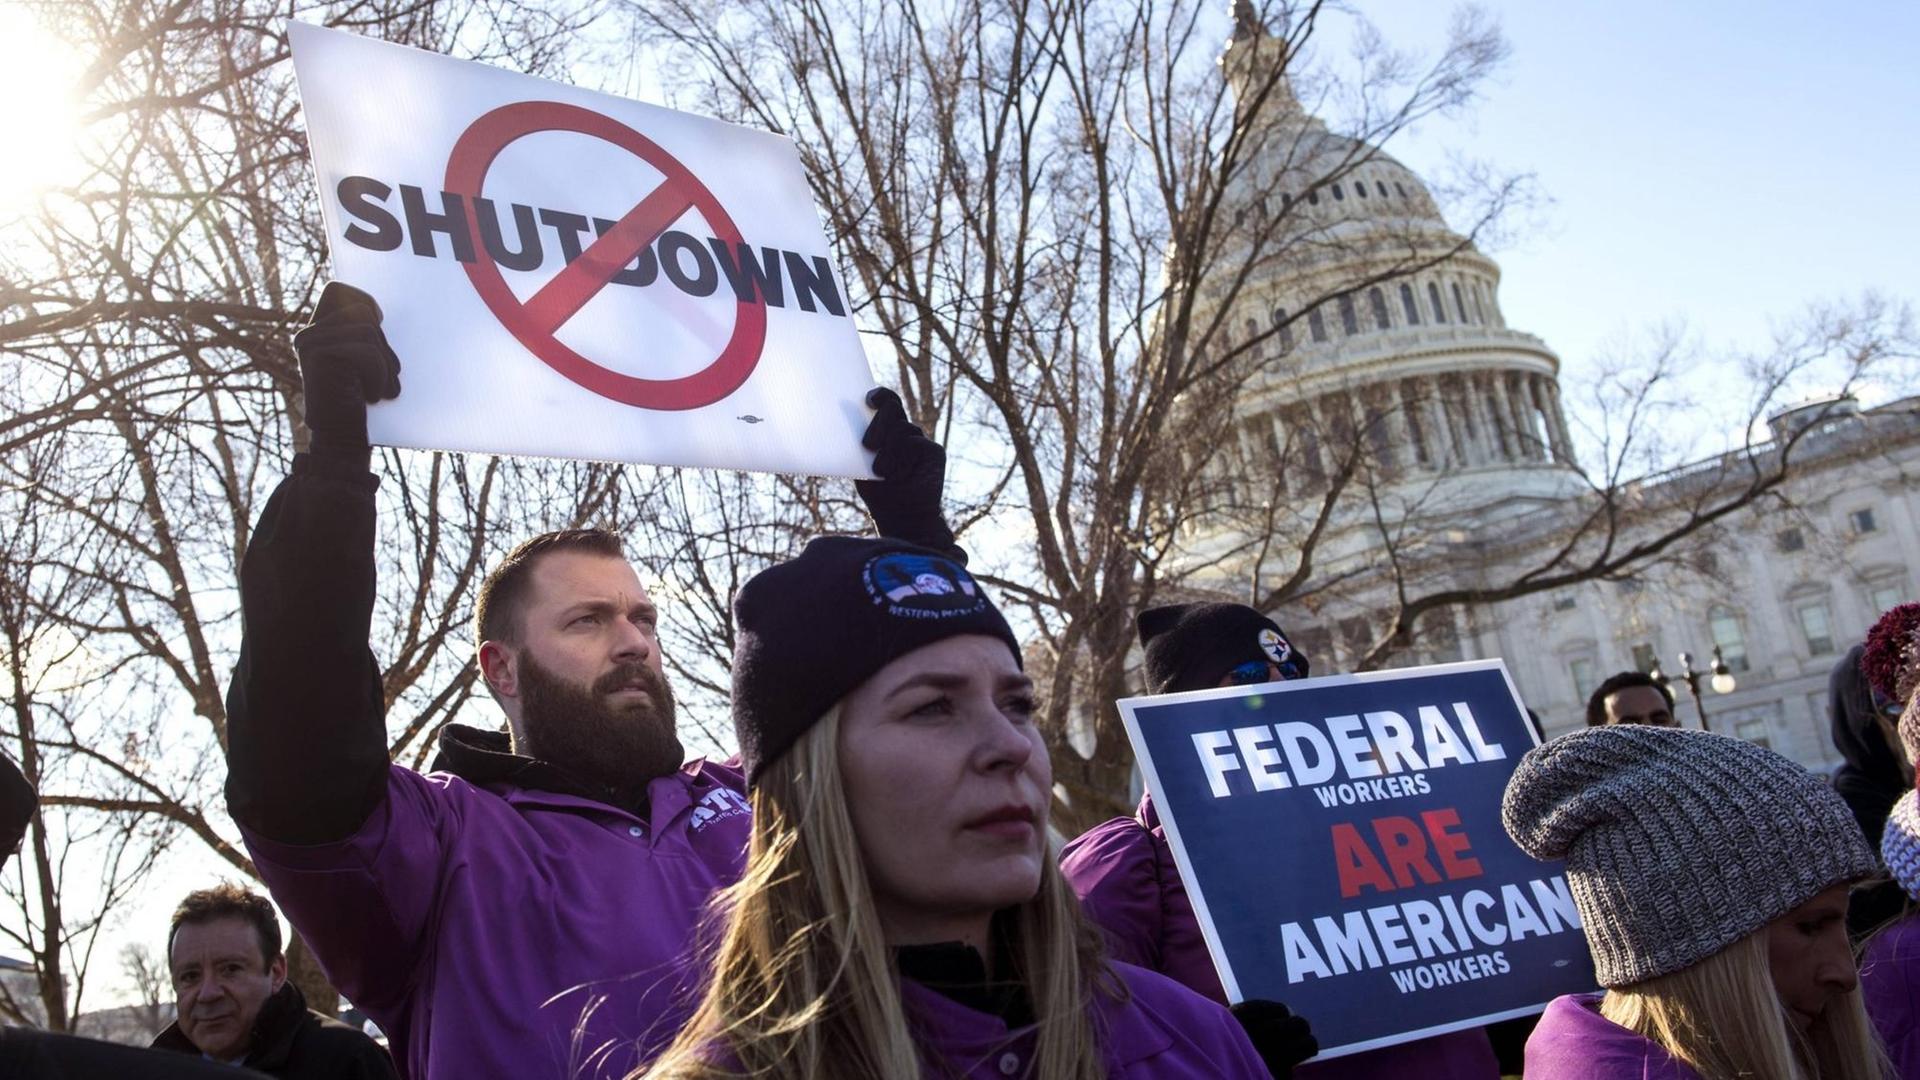 Demonstranten fordern vor dem Kapitol in Washington D.C. ein Ende des "Shutdowns".